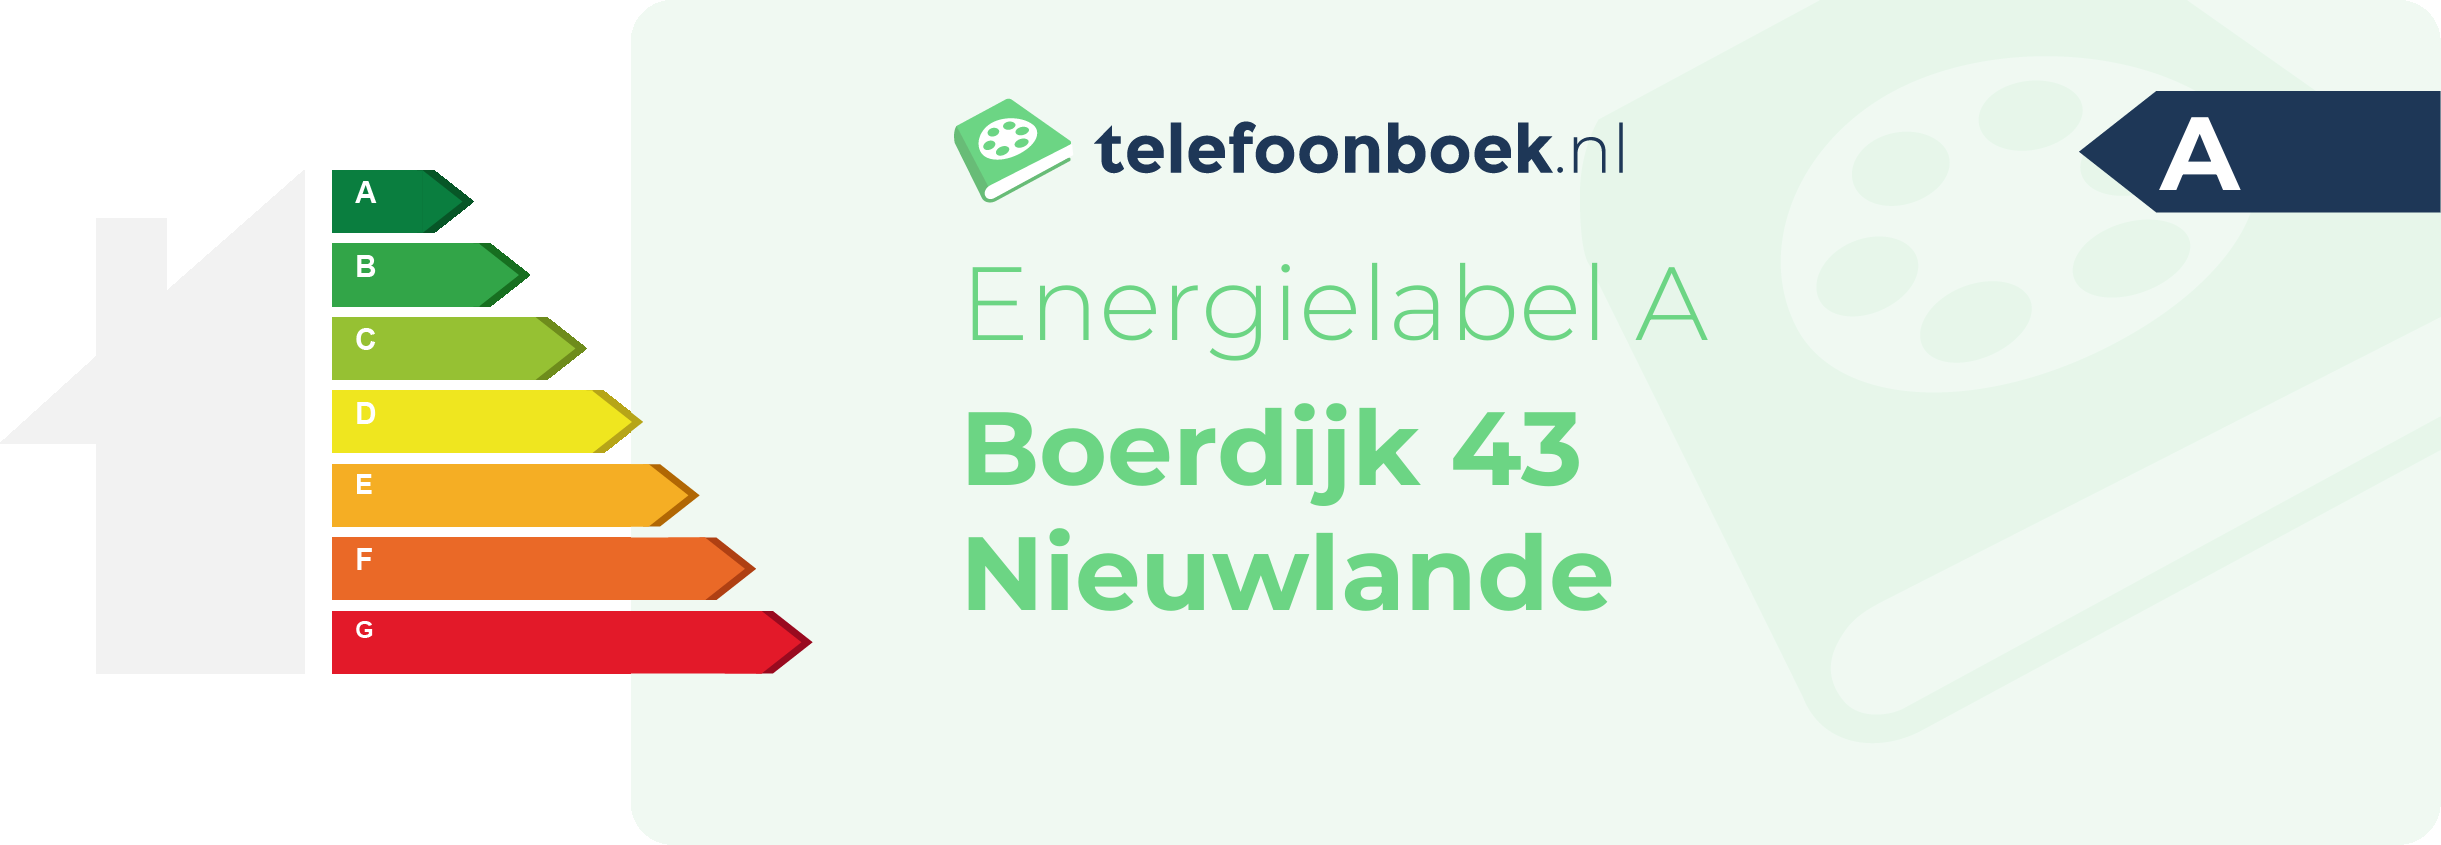 Energielabel Boerdijk 43 Nieuwlande